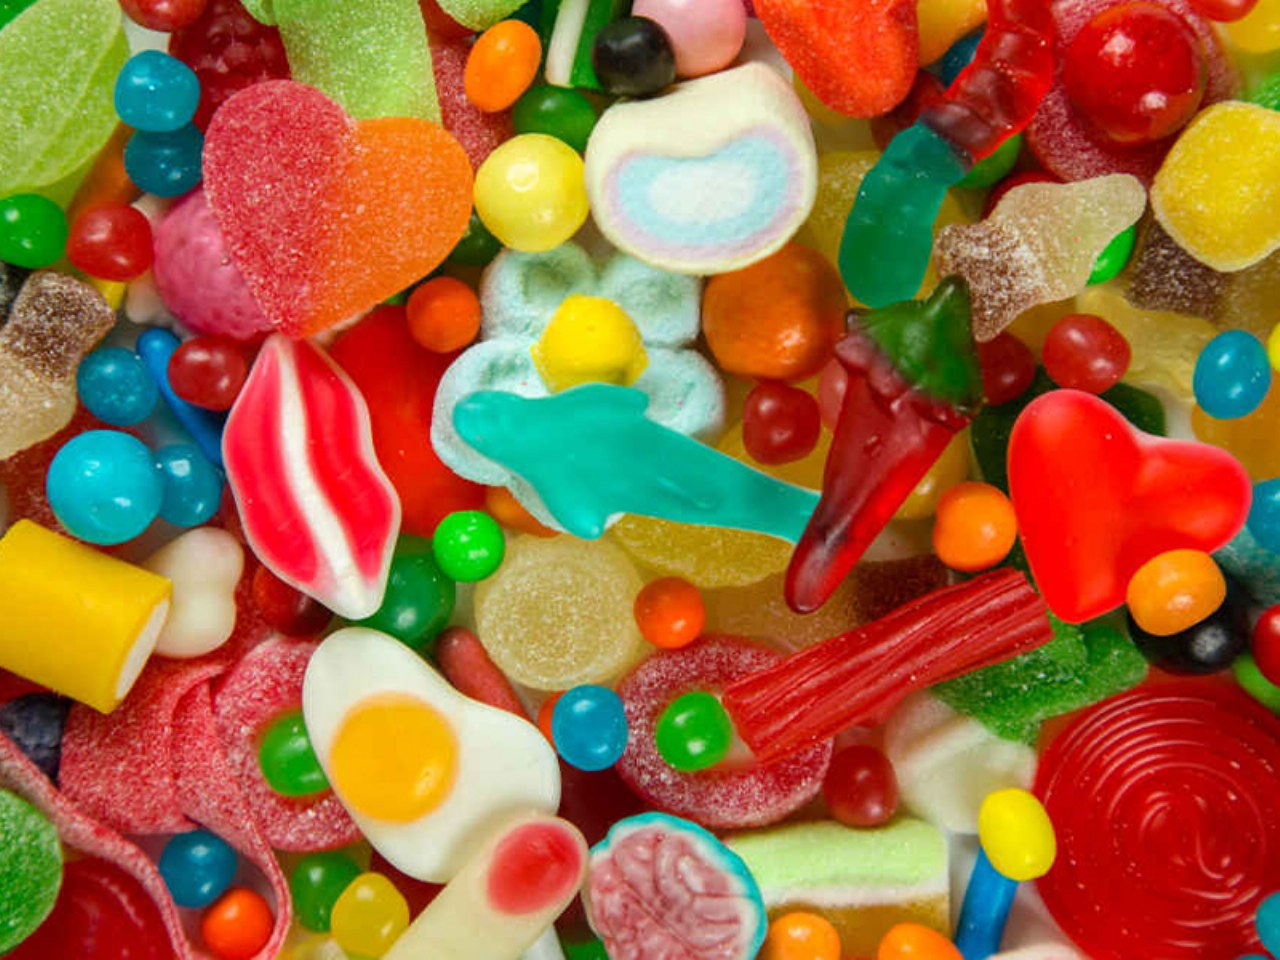 Ingrosso di caramelle online: le 3 invenzioni che hanno cambiato il modo dei dolci